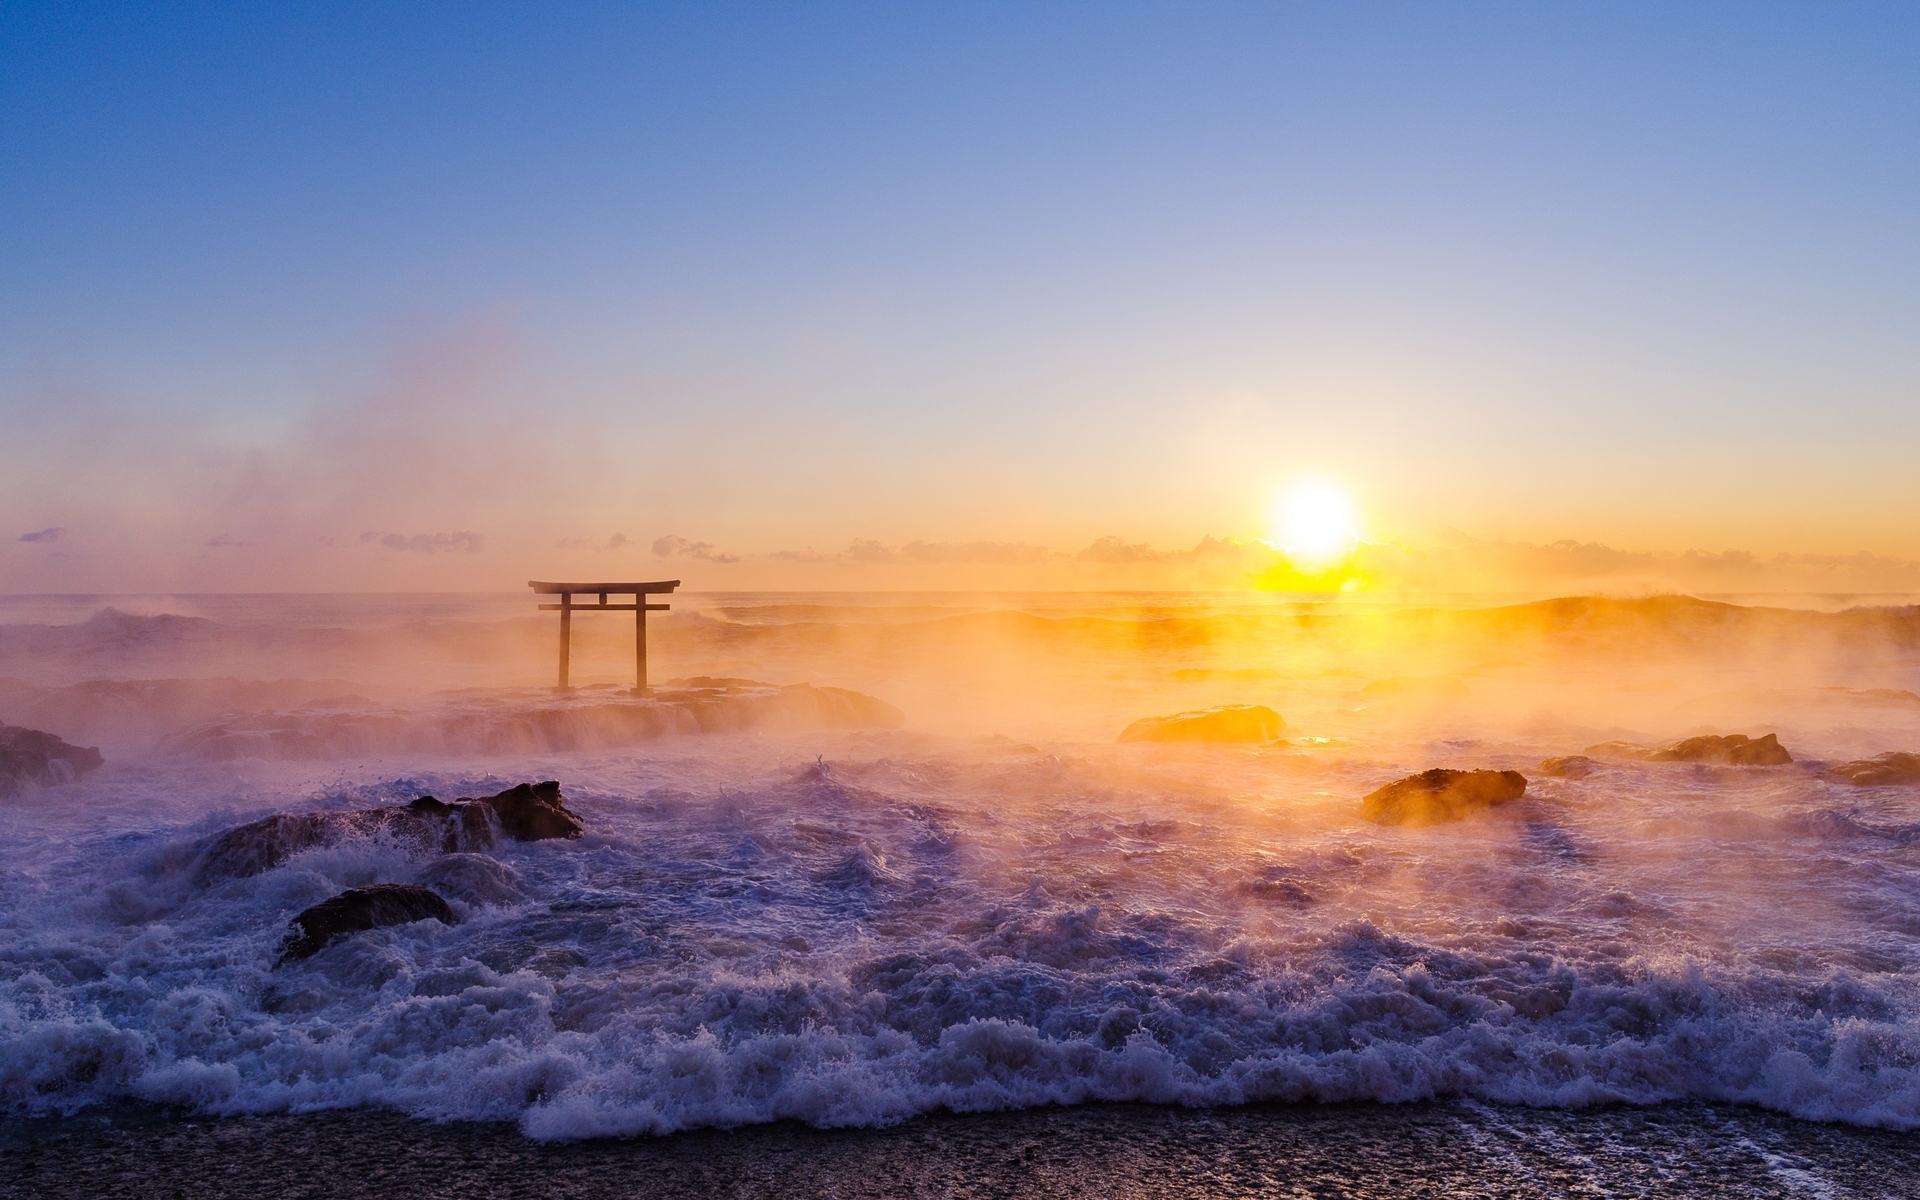 Картинка: Море, солнце, закат, испарение, вода, волны, камни, берег, небо, ворота